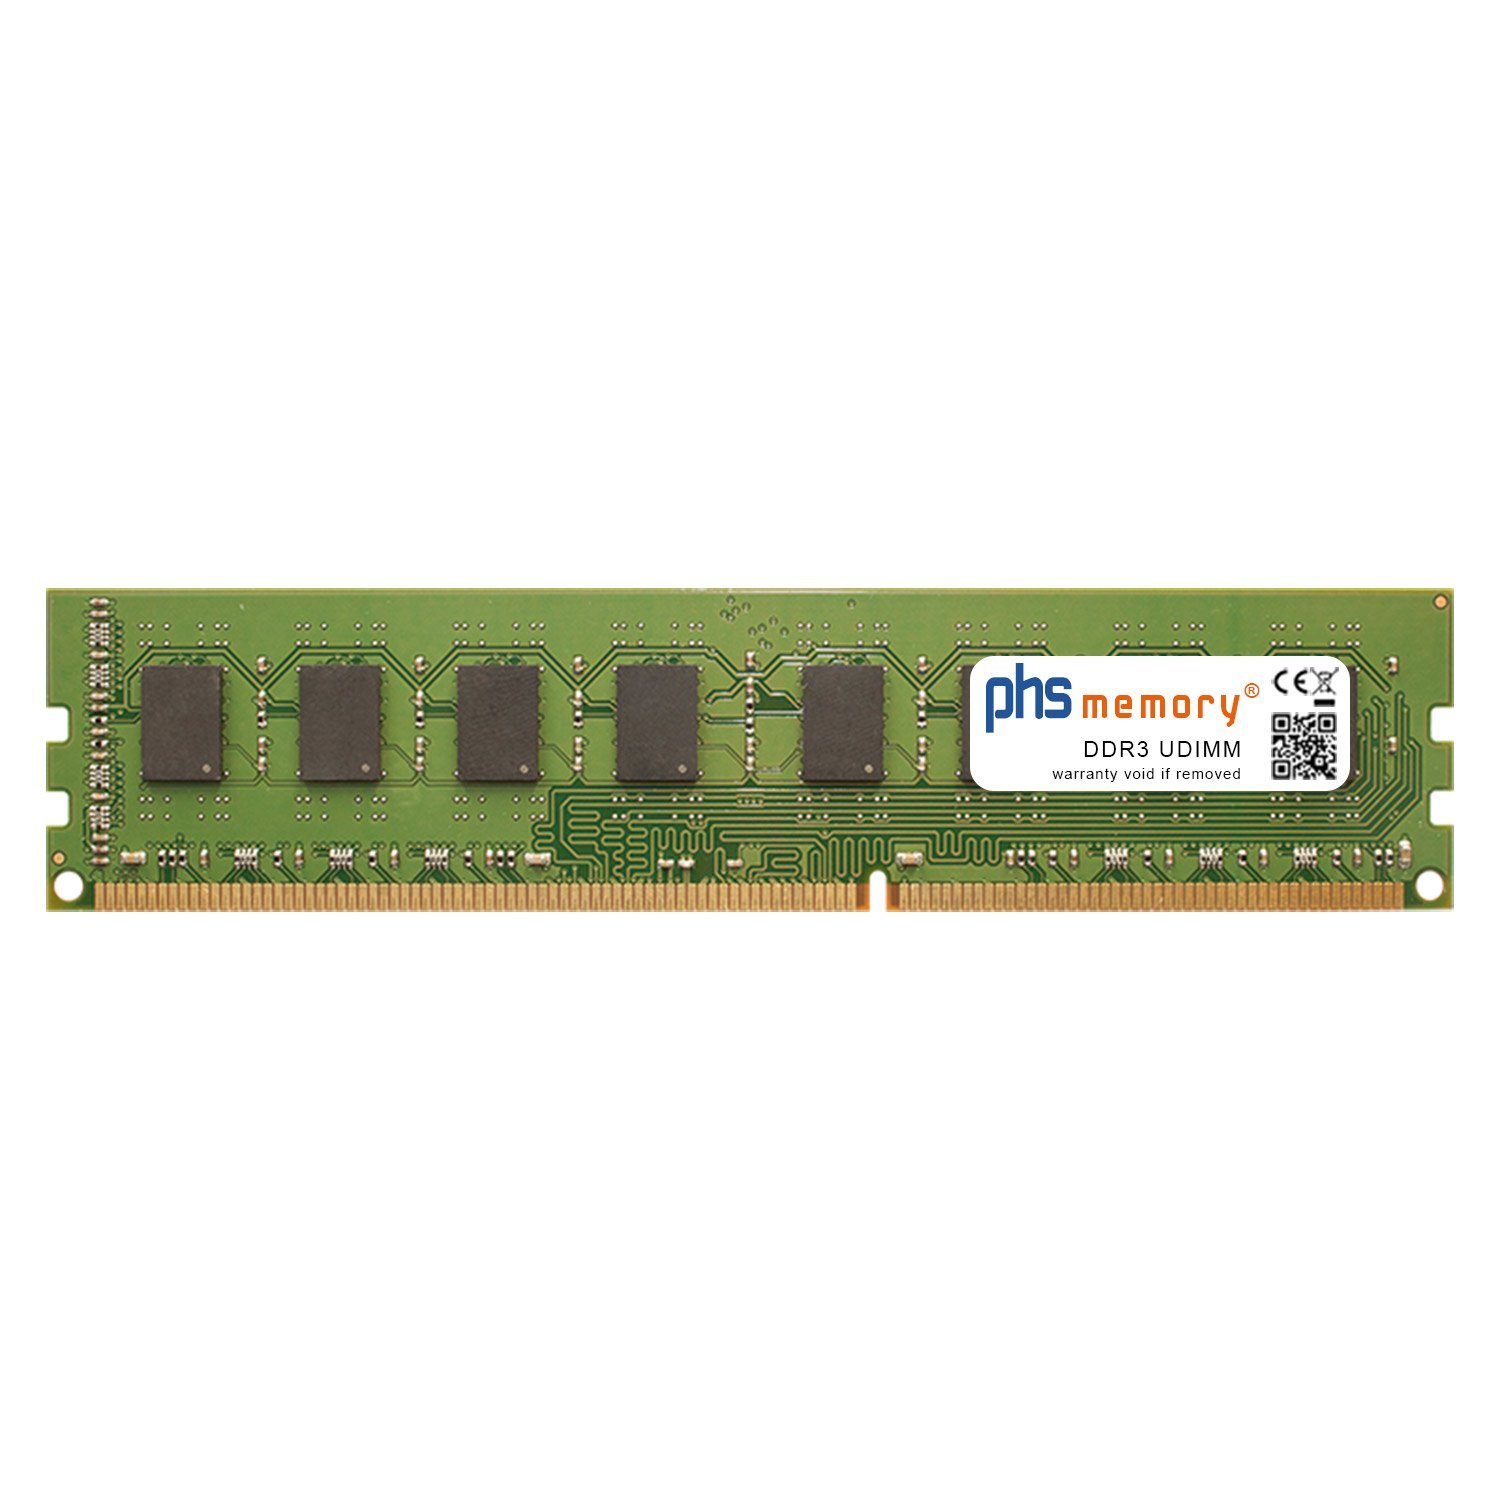 PHS-memory RAM für MSI Gaming 6 Z97A Arbeitsspeicher